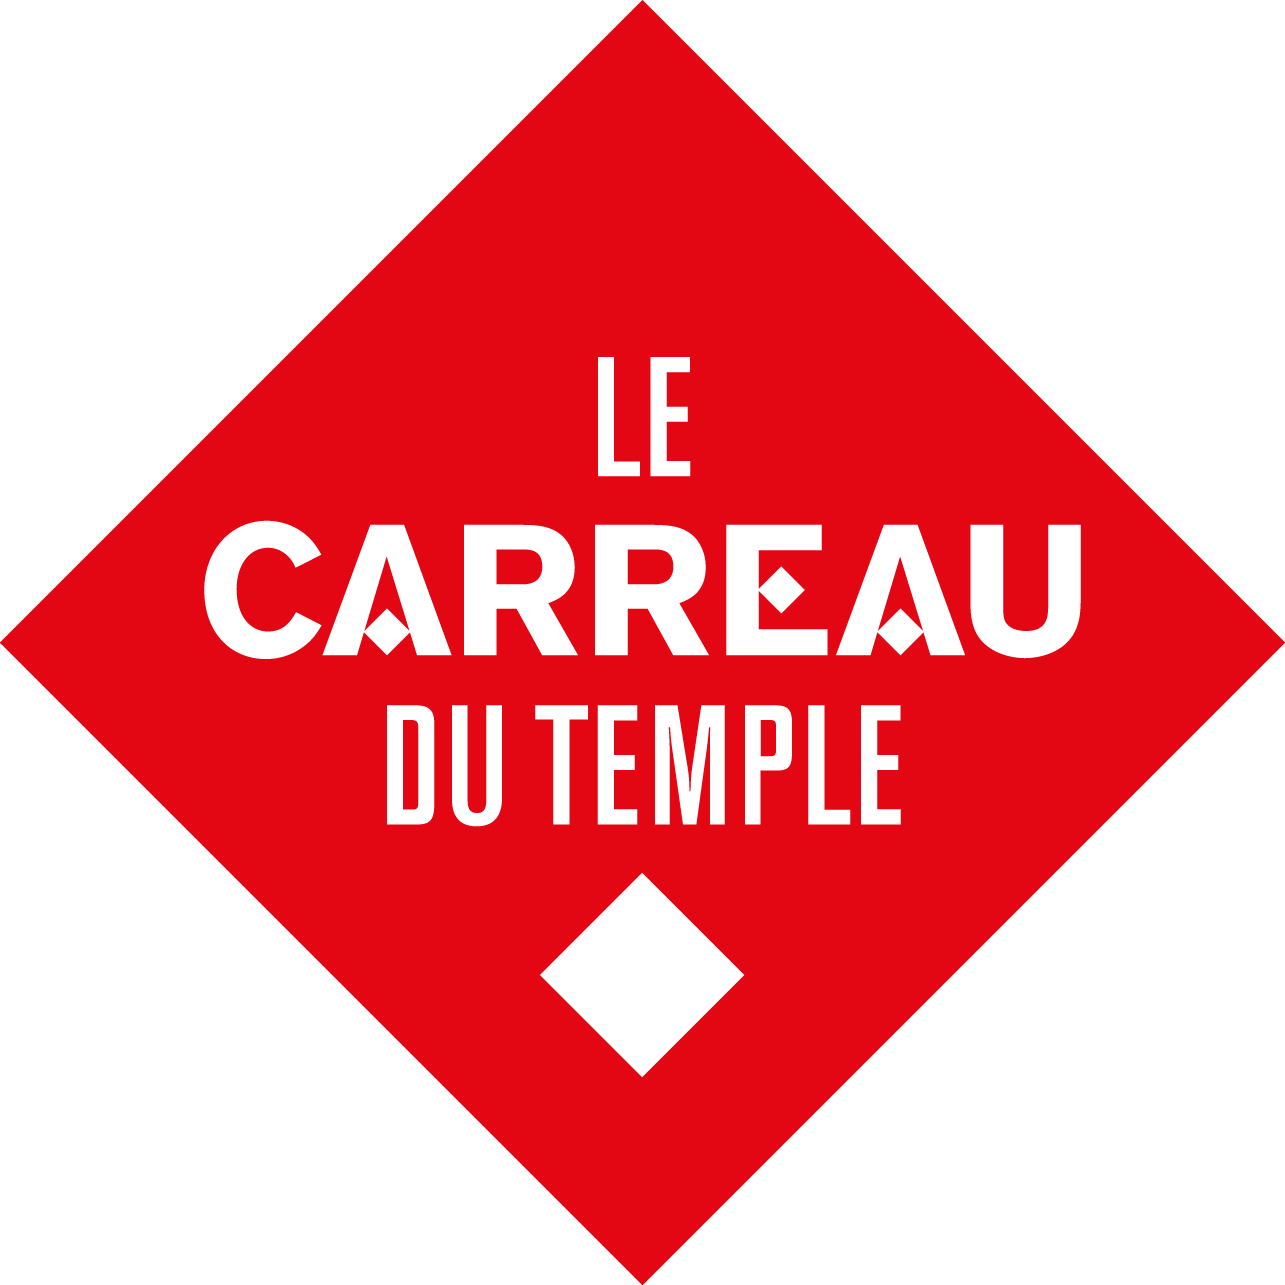 Carreau-logo rouge 72 dpi - 800px